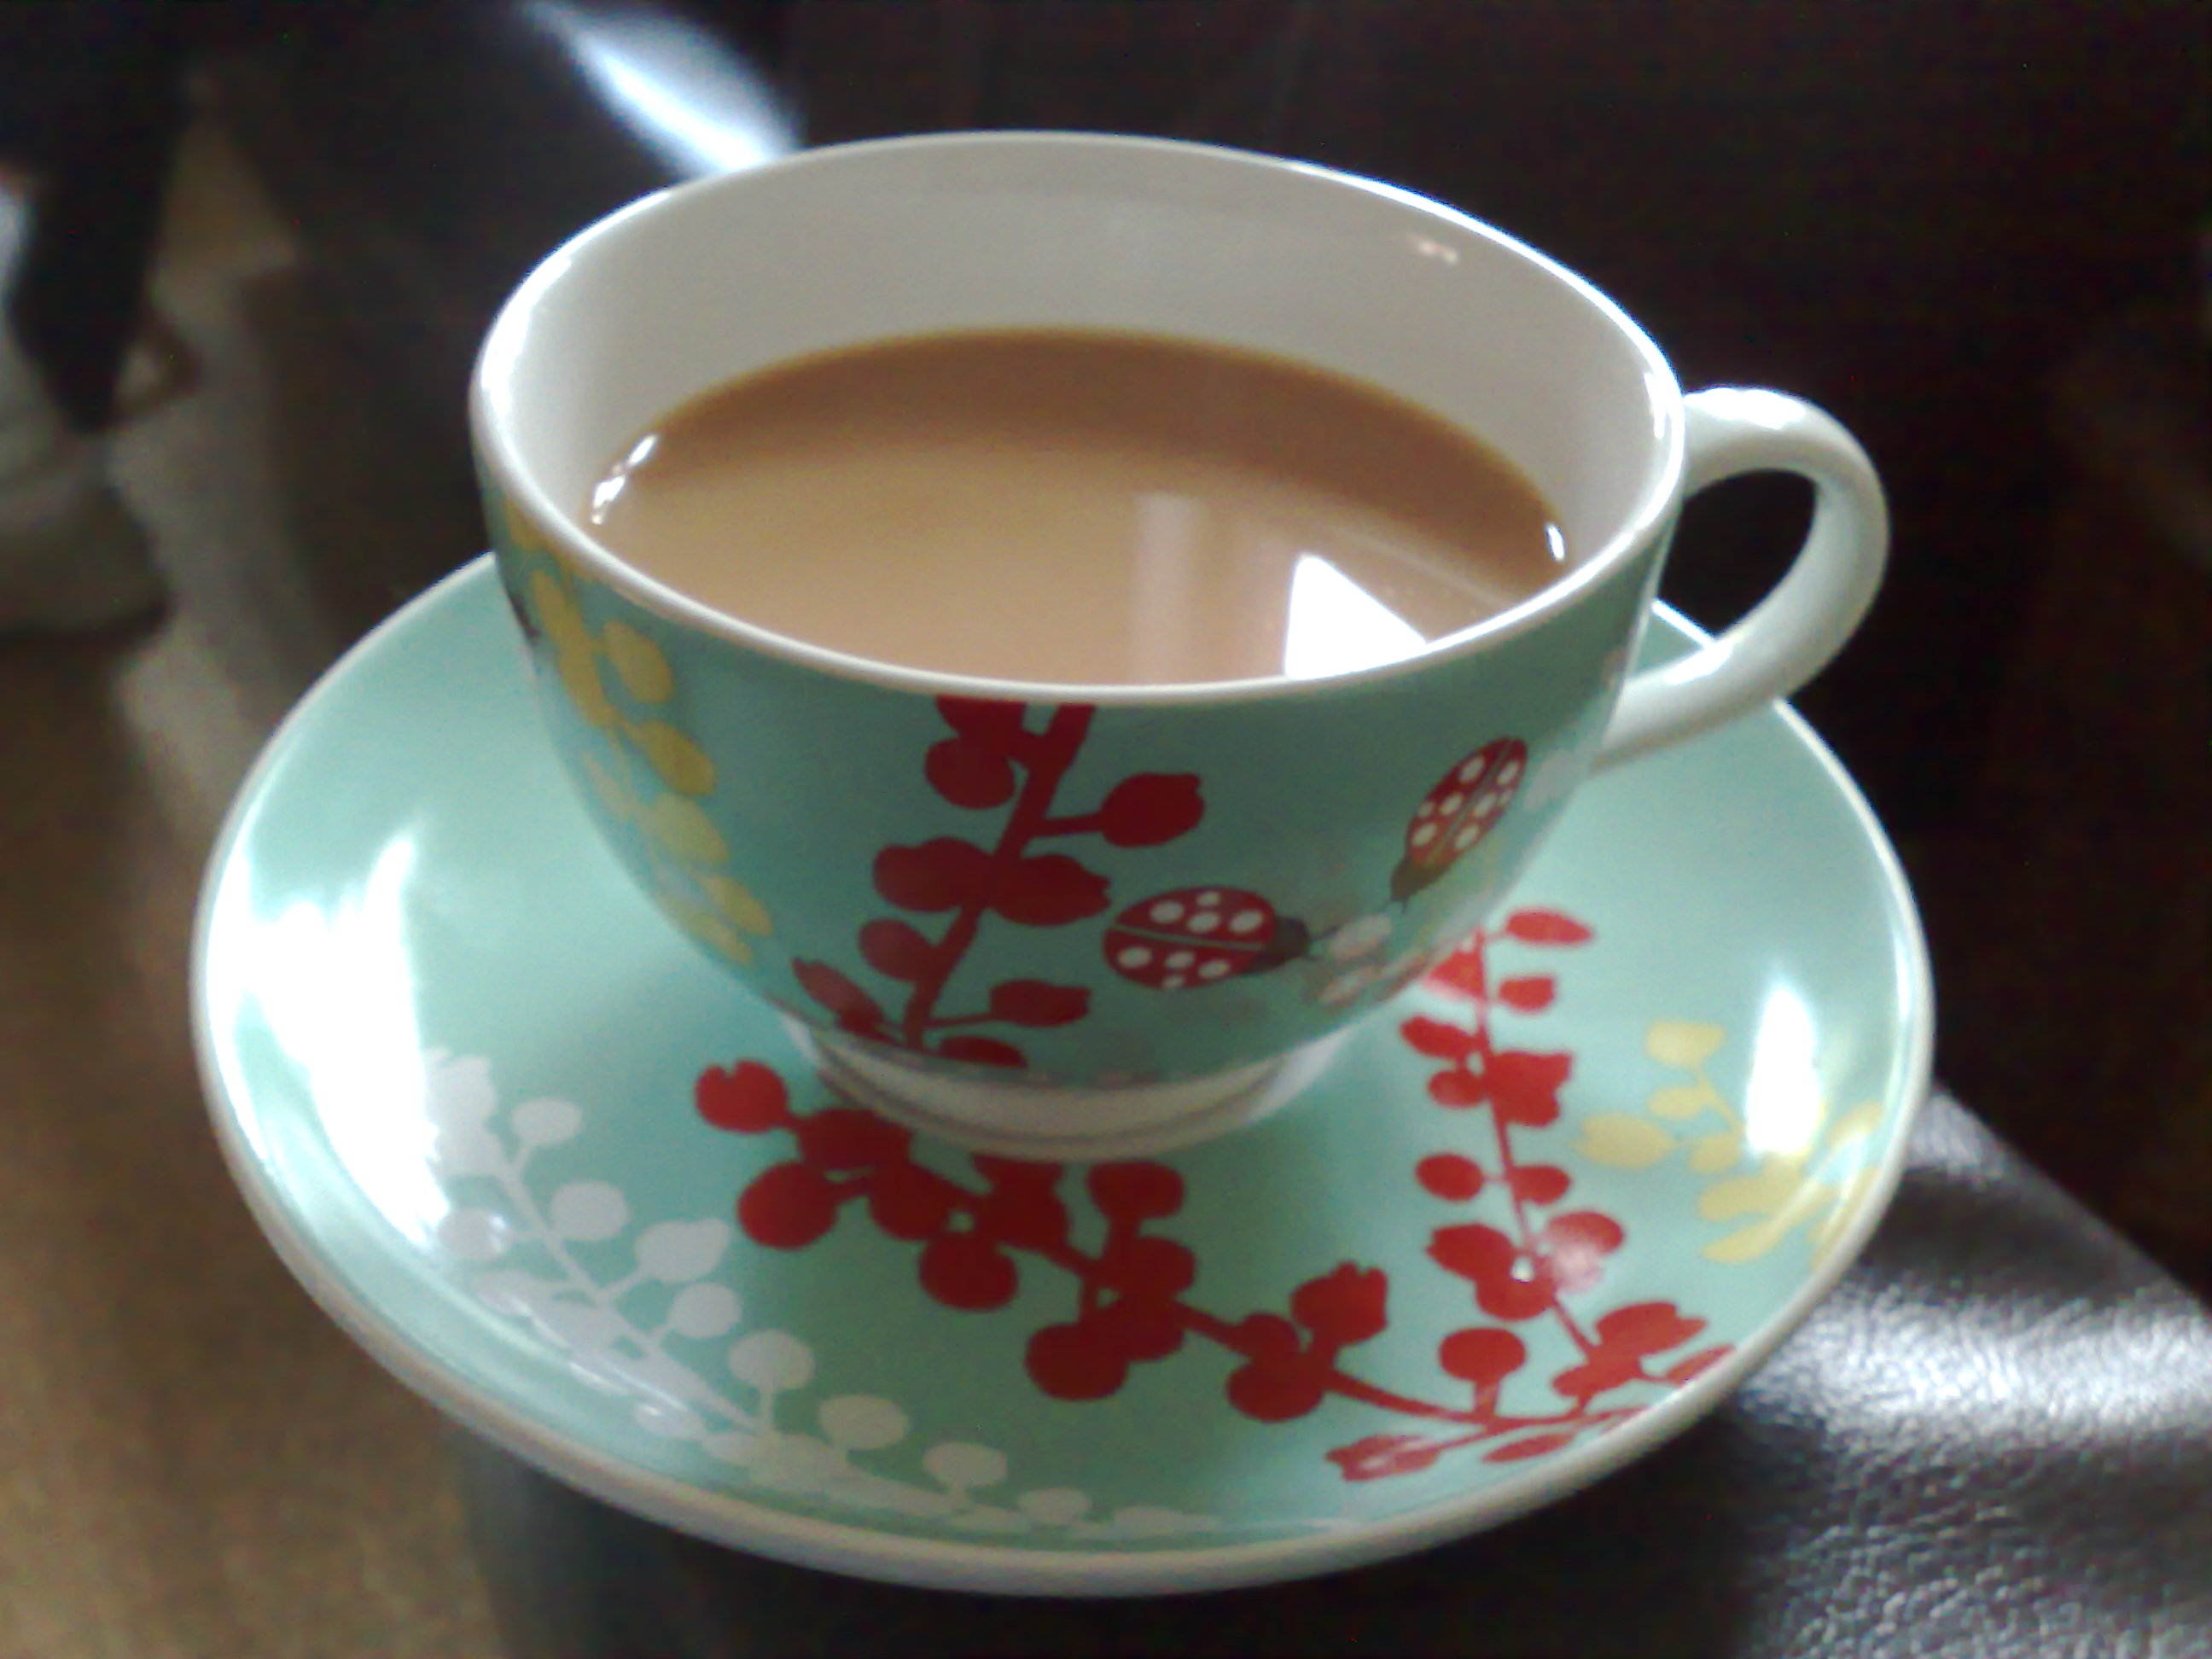 Cup Of Tea Wallpaper